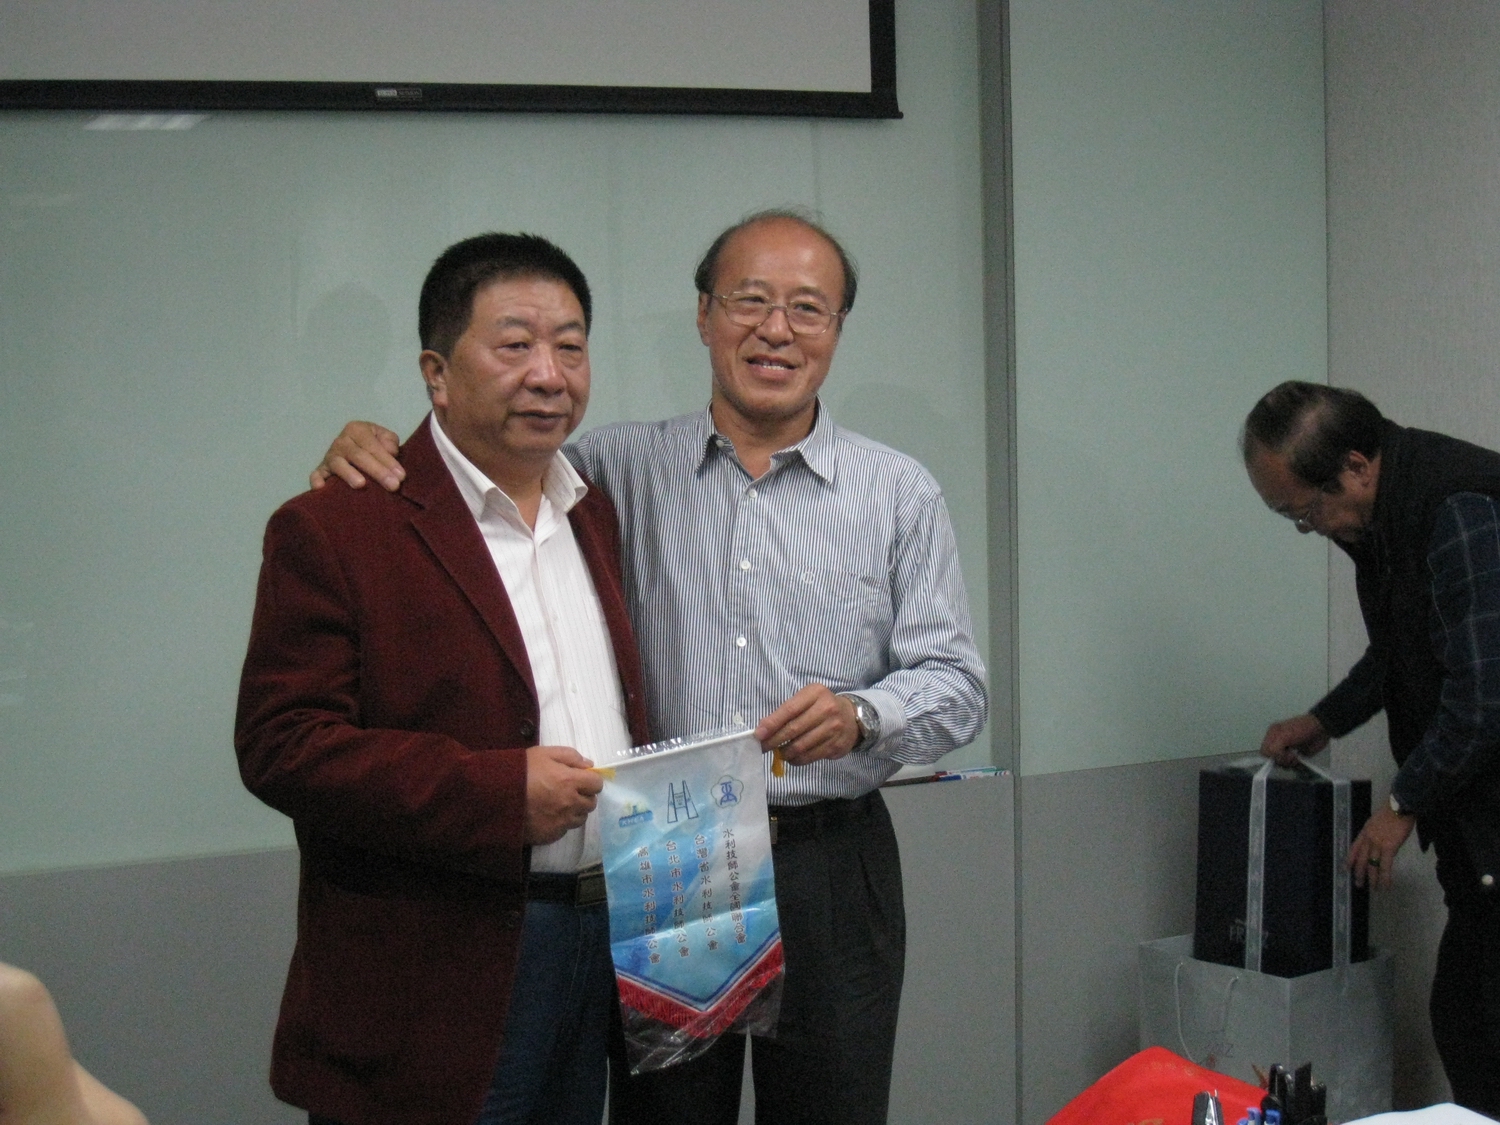 省公會周文祥理事長代表致贈會旗予學會代表柴建華副理事長。